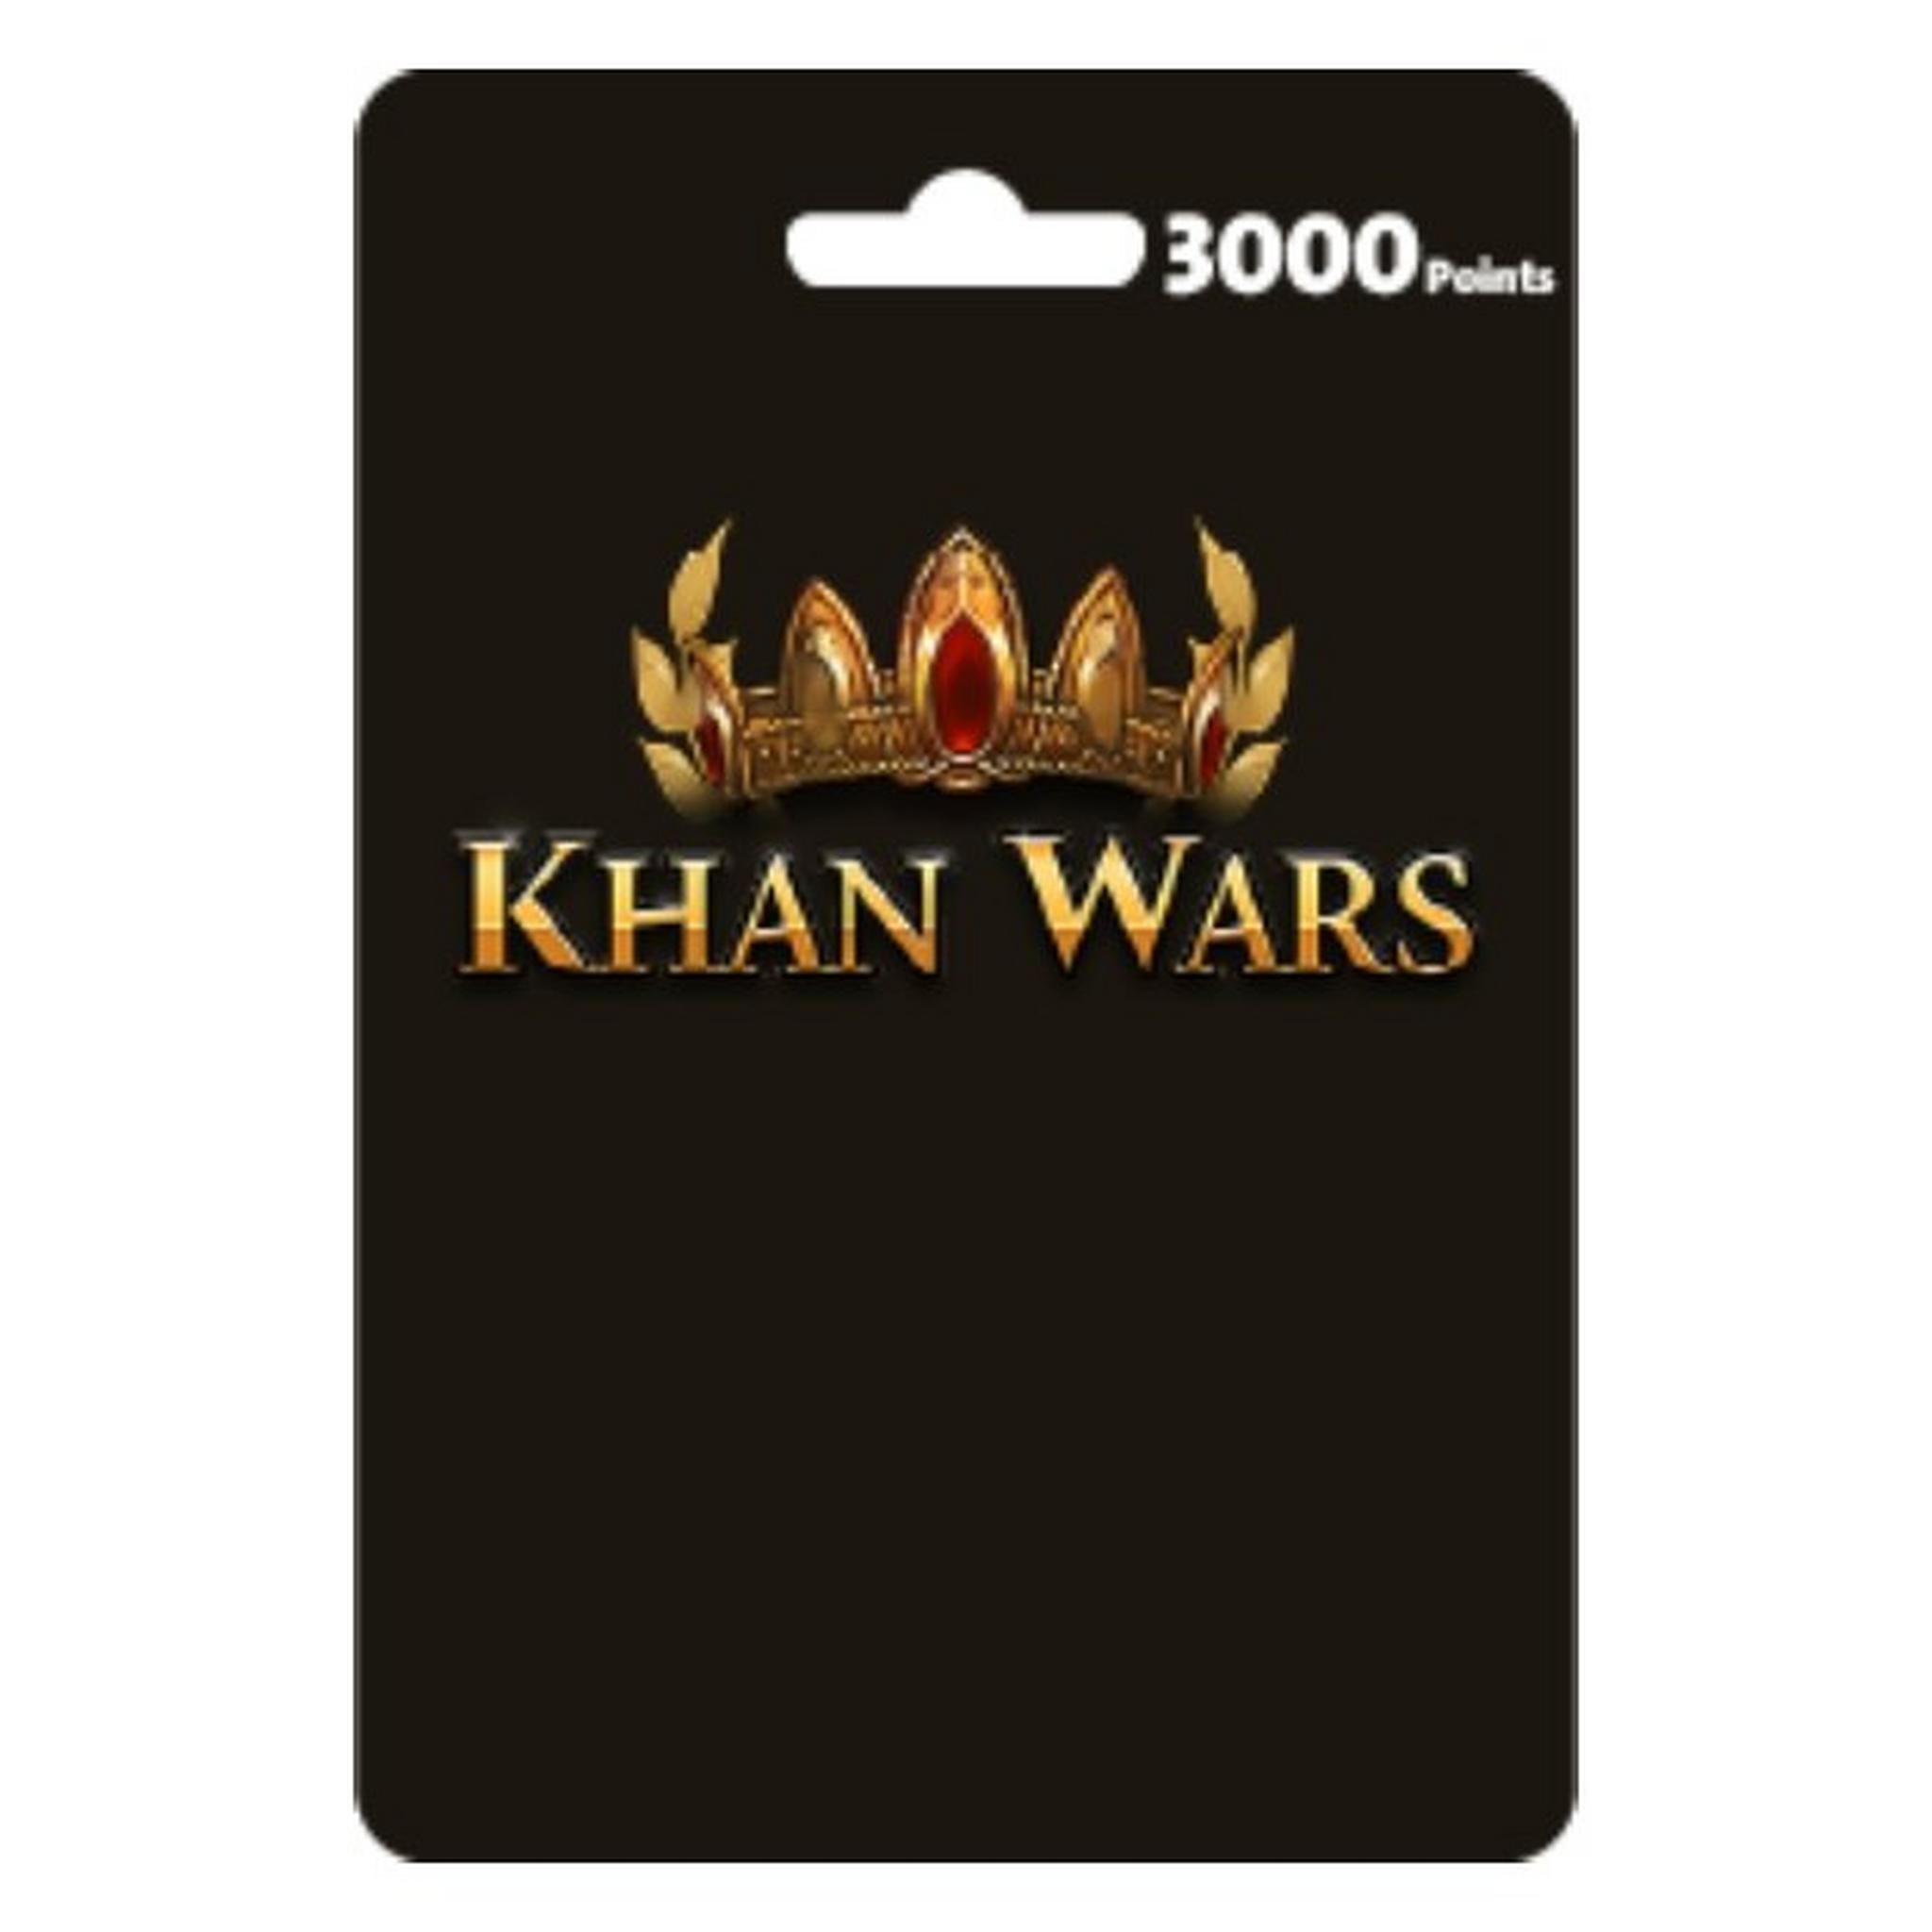 Khan Wars Card - 3000 Coins